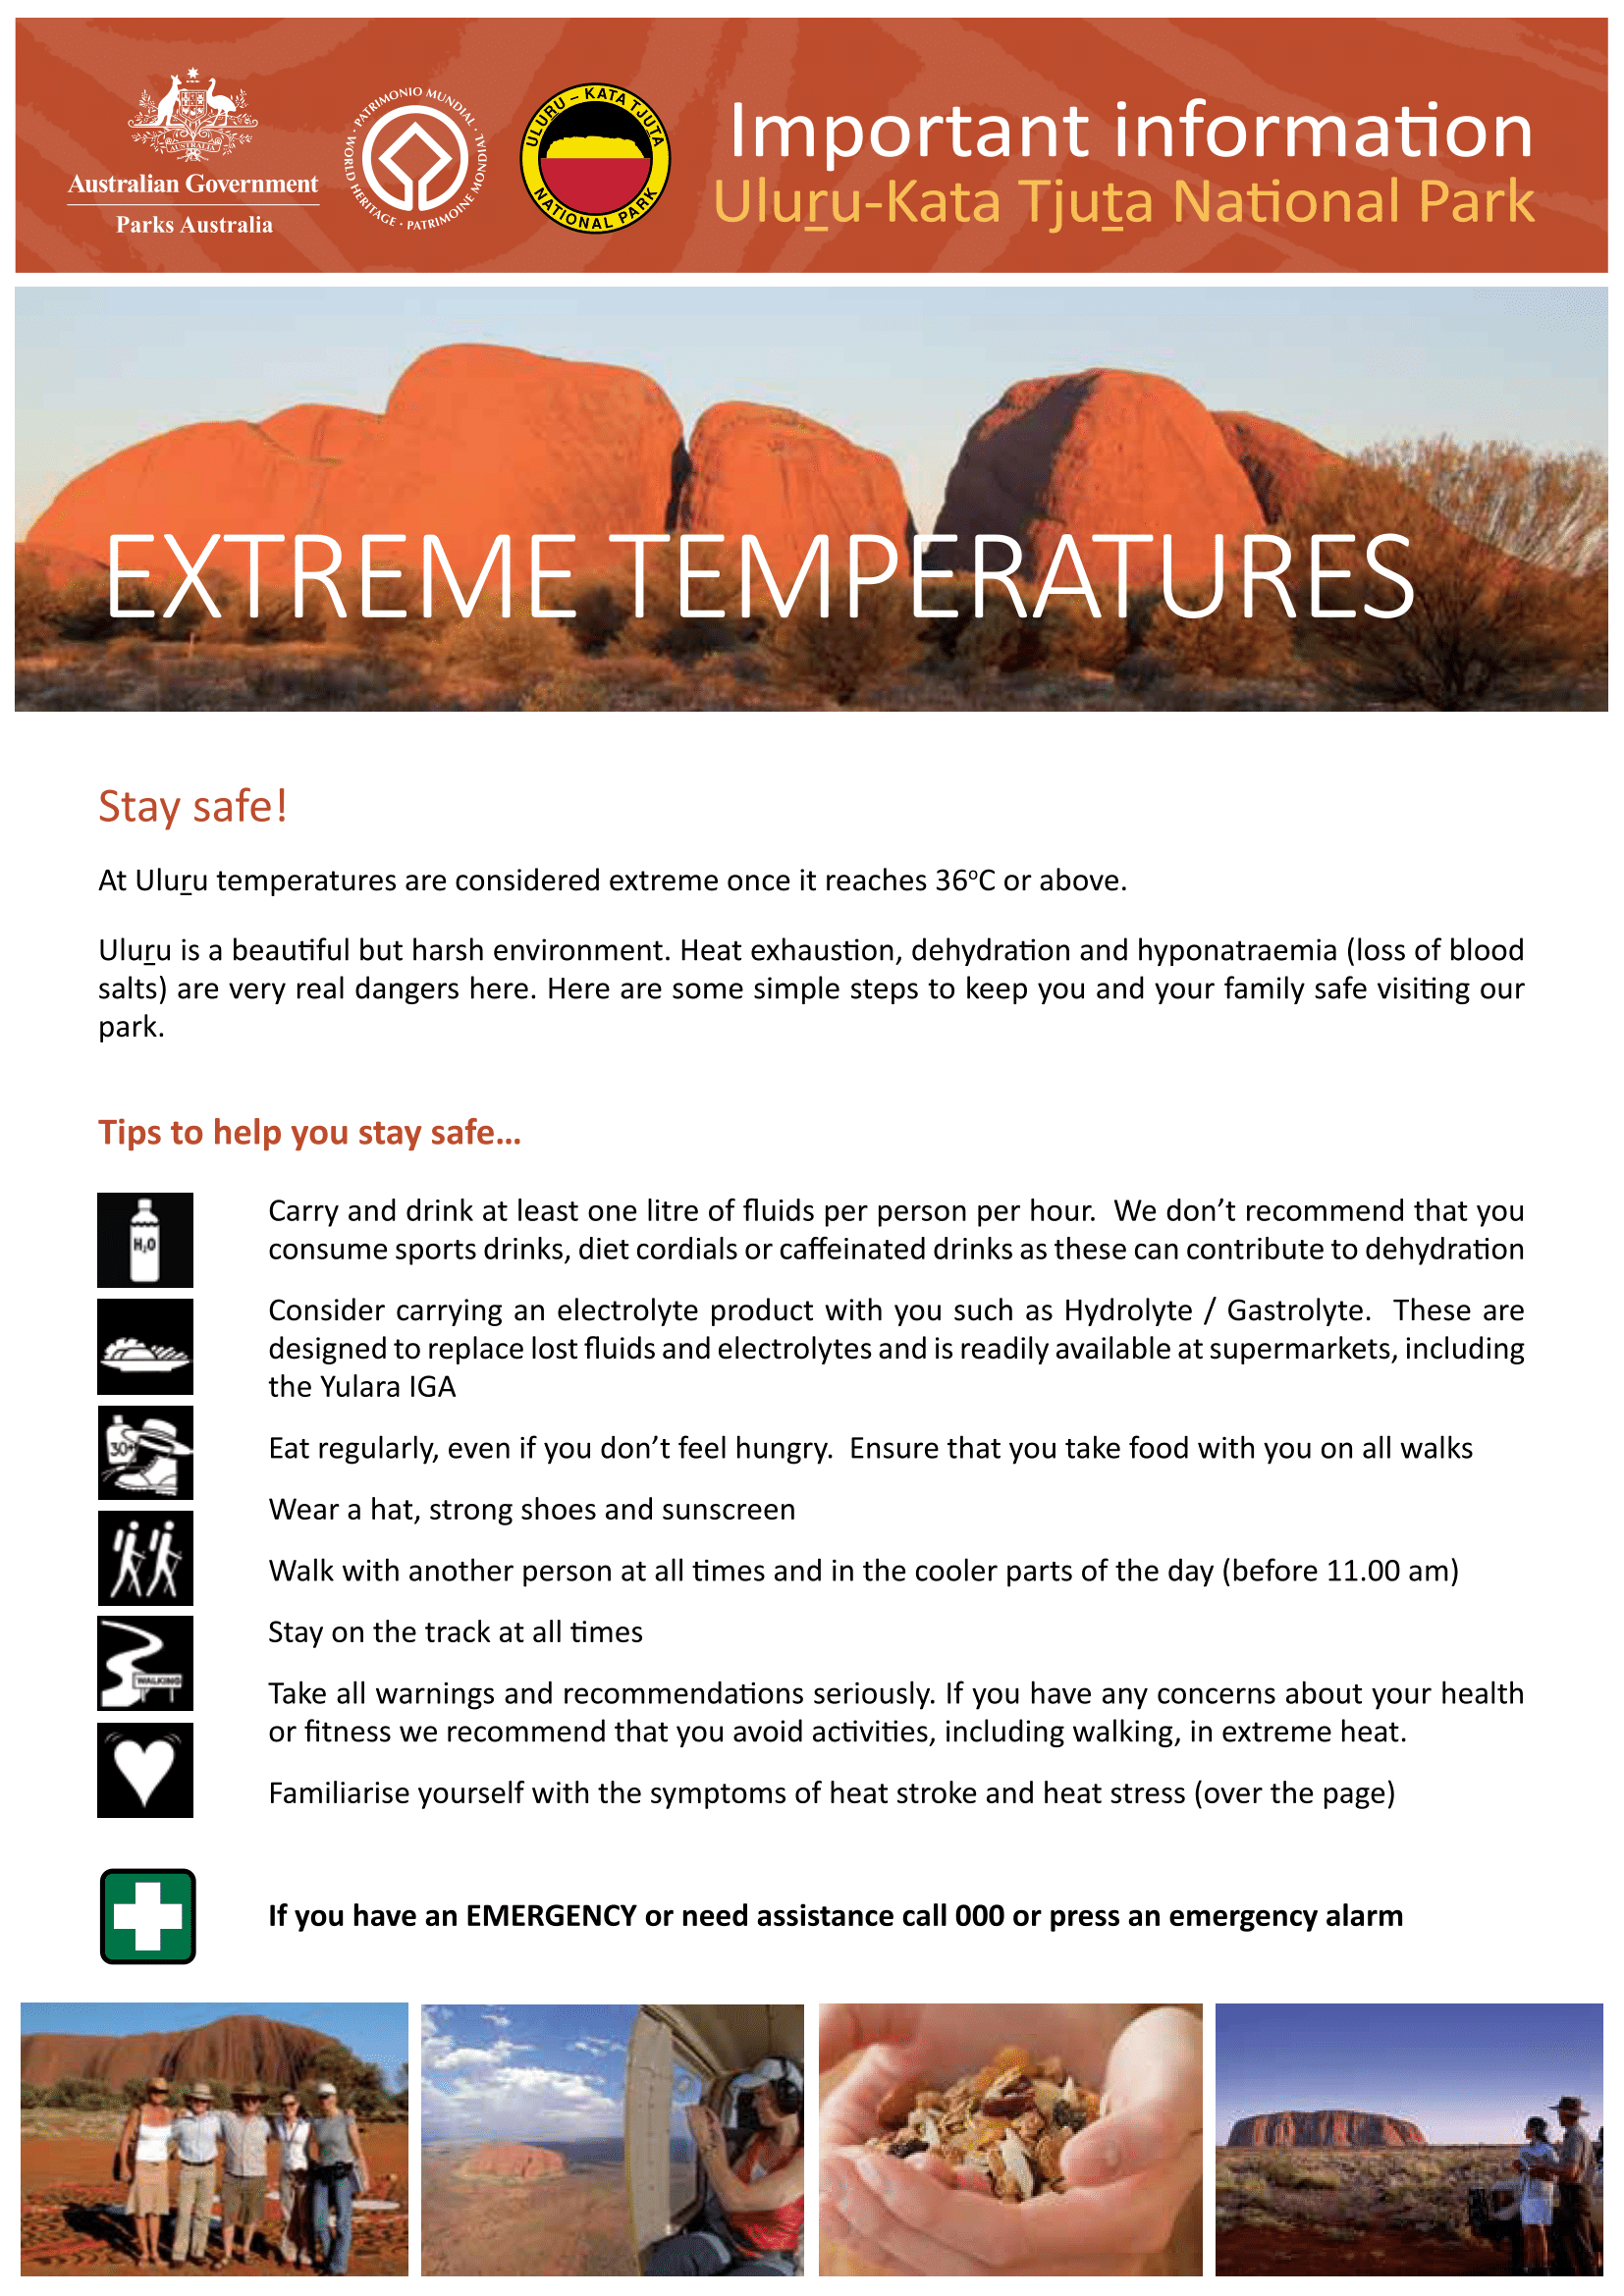 fs-extremetemperatures-1